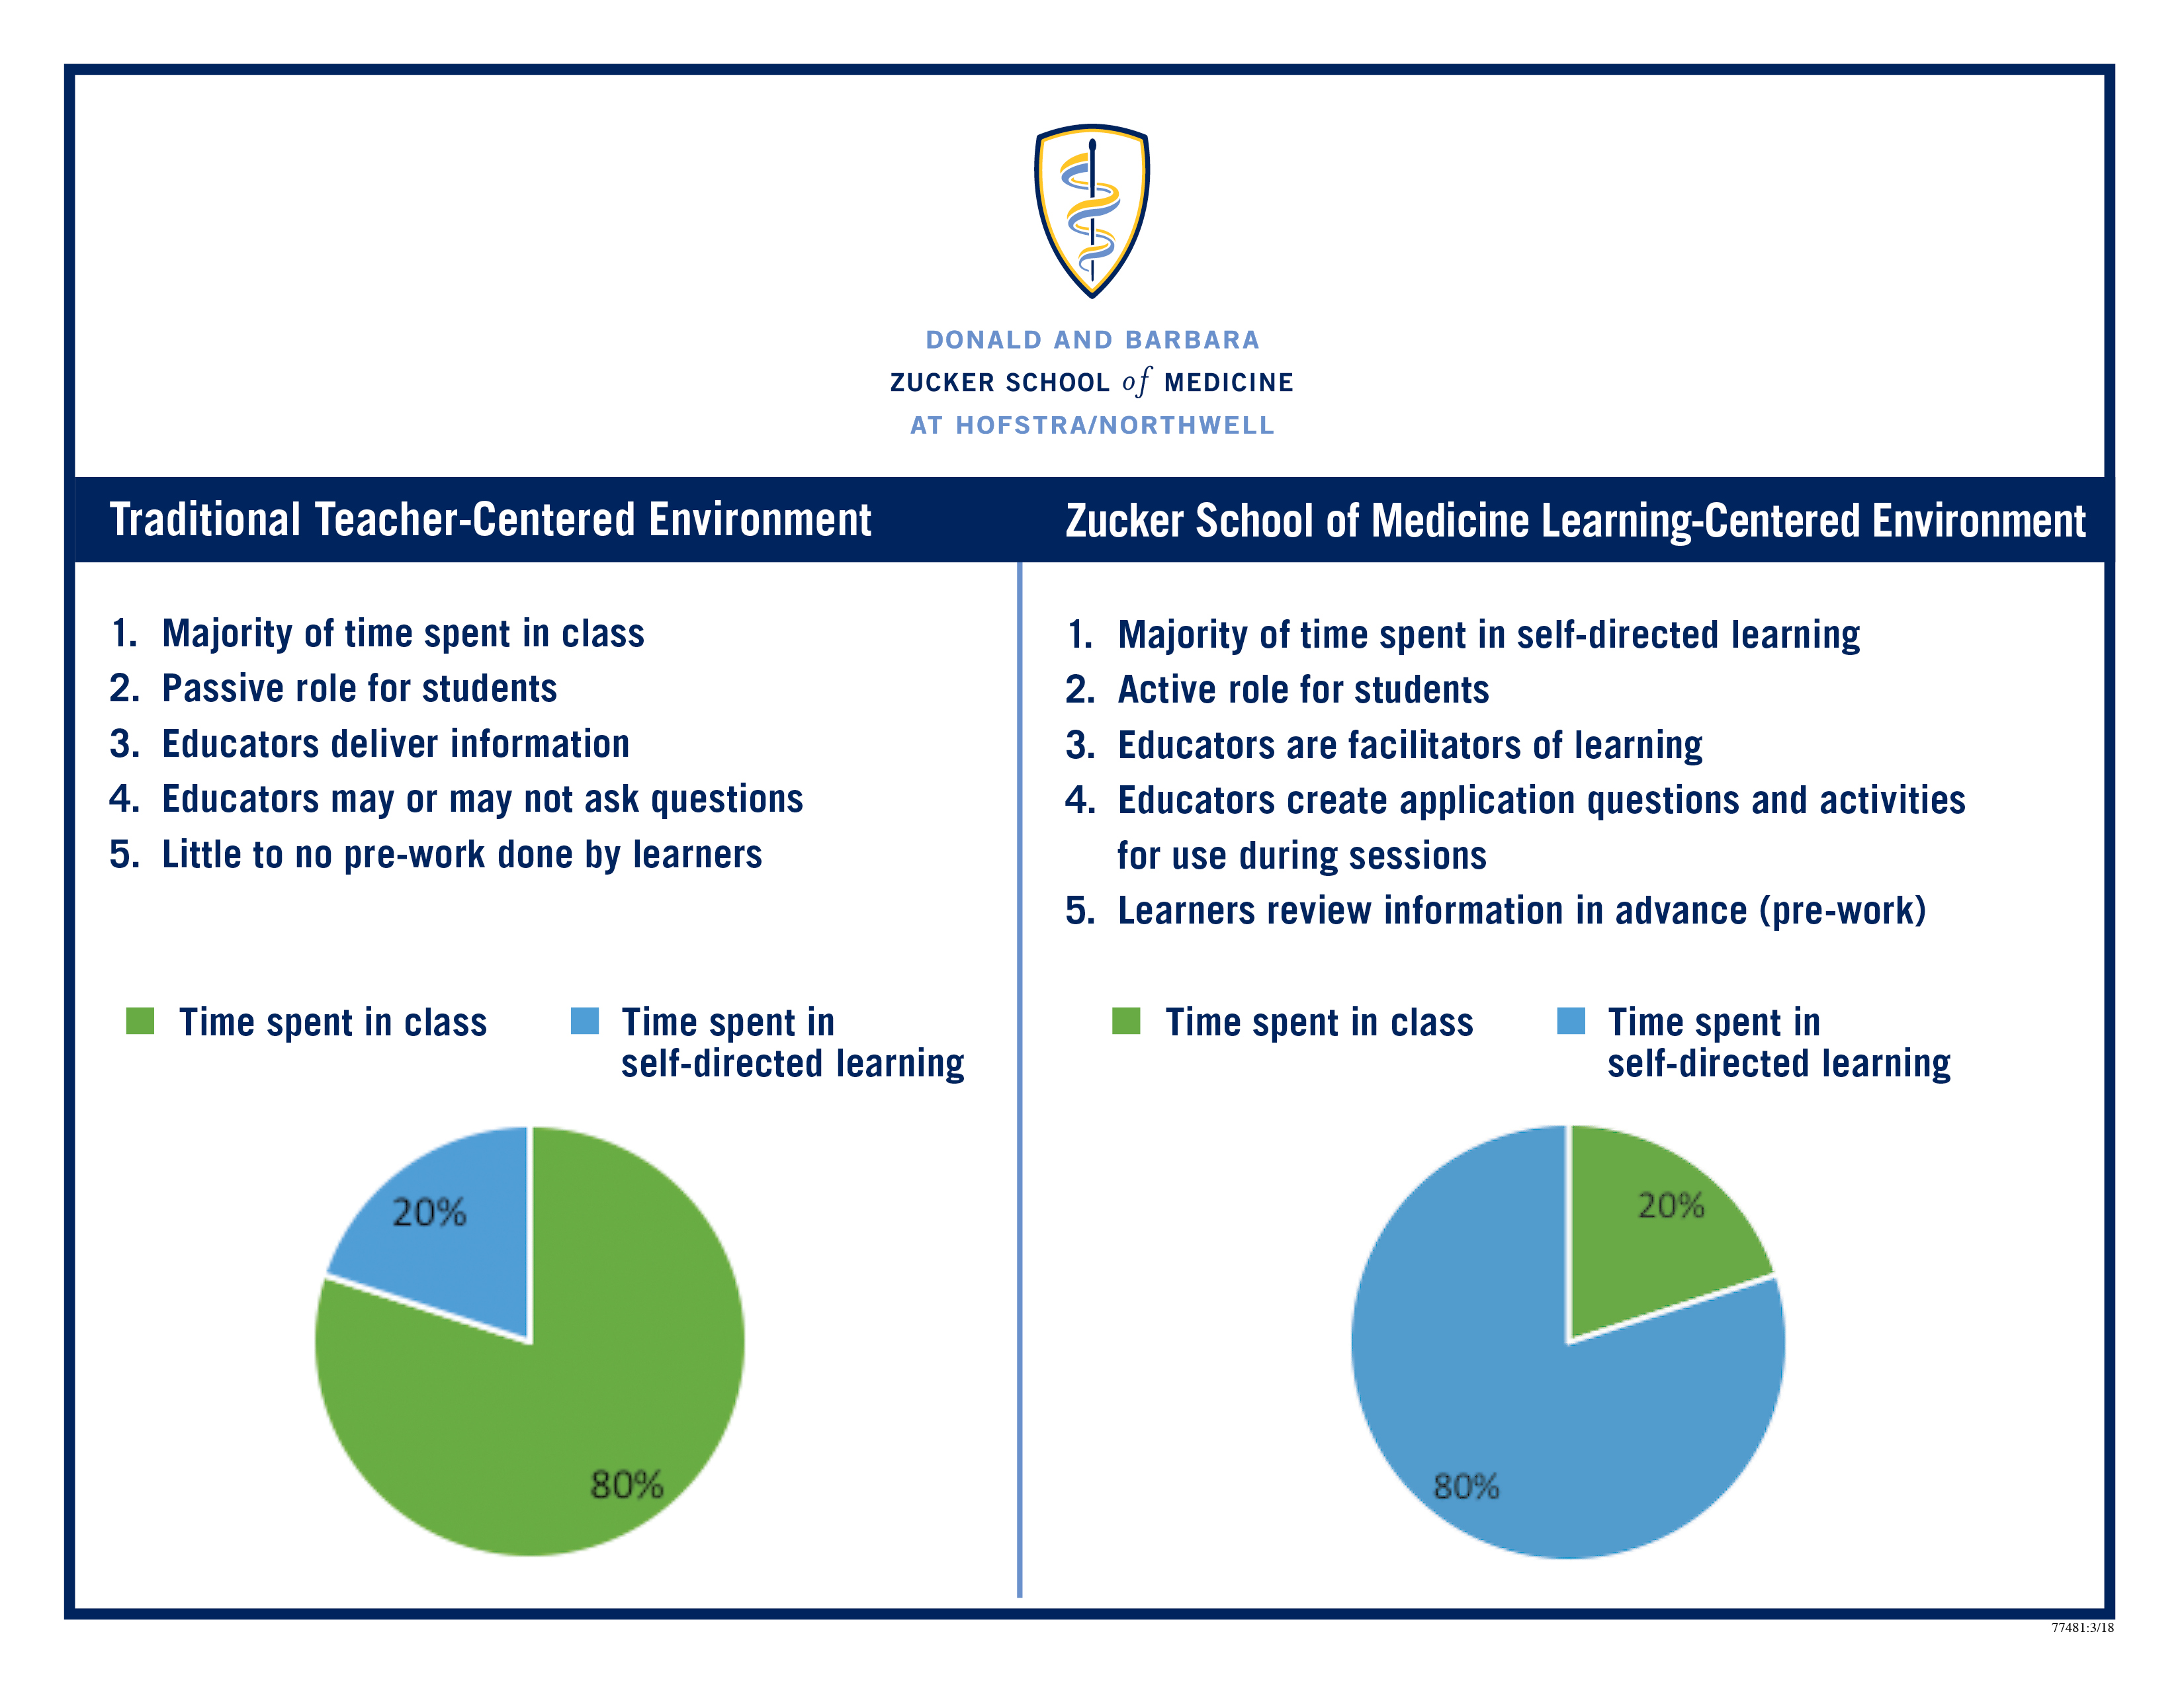 student centered learning vs teacher centered learning